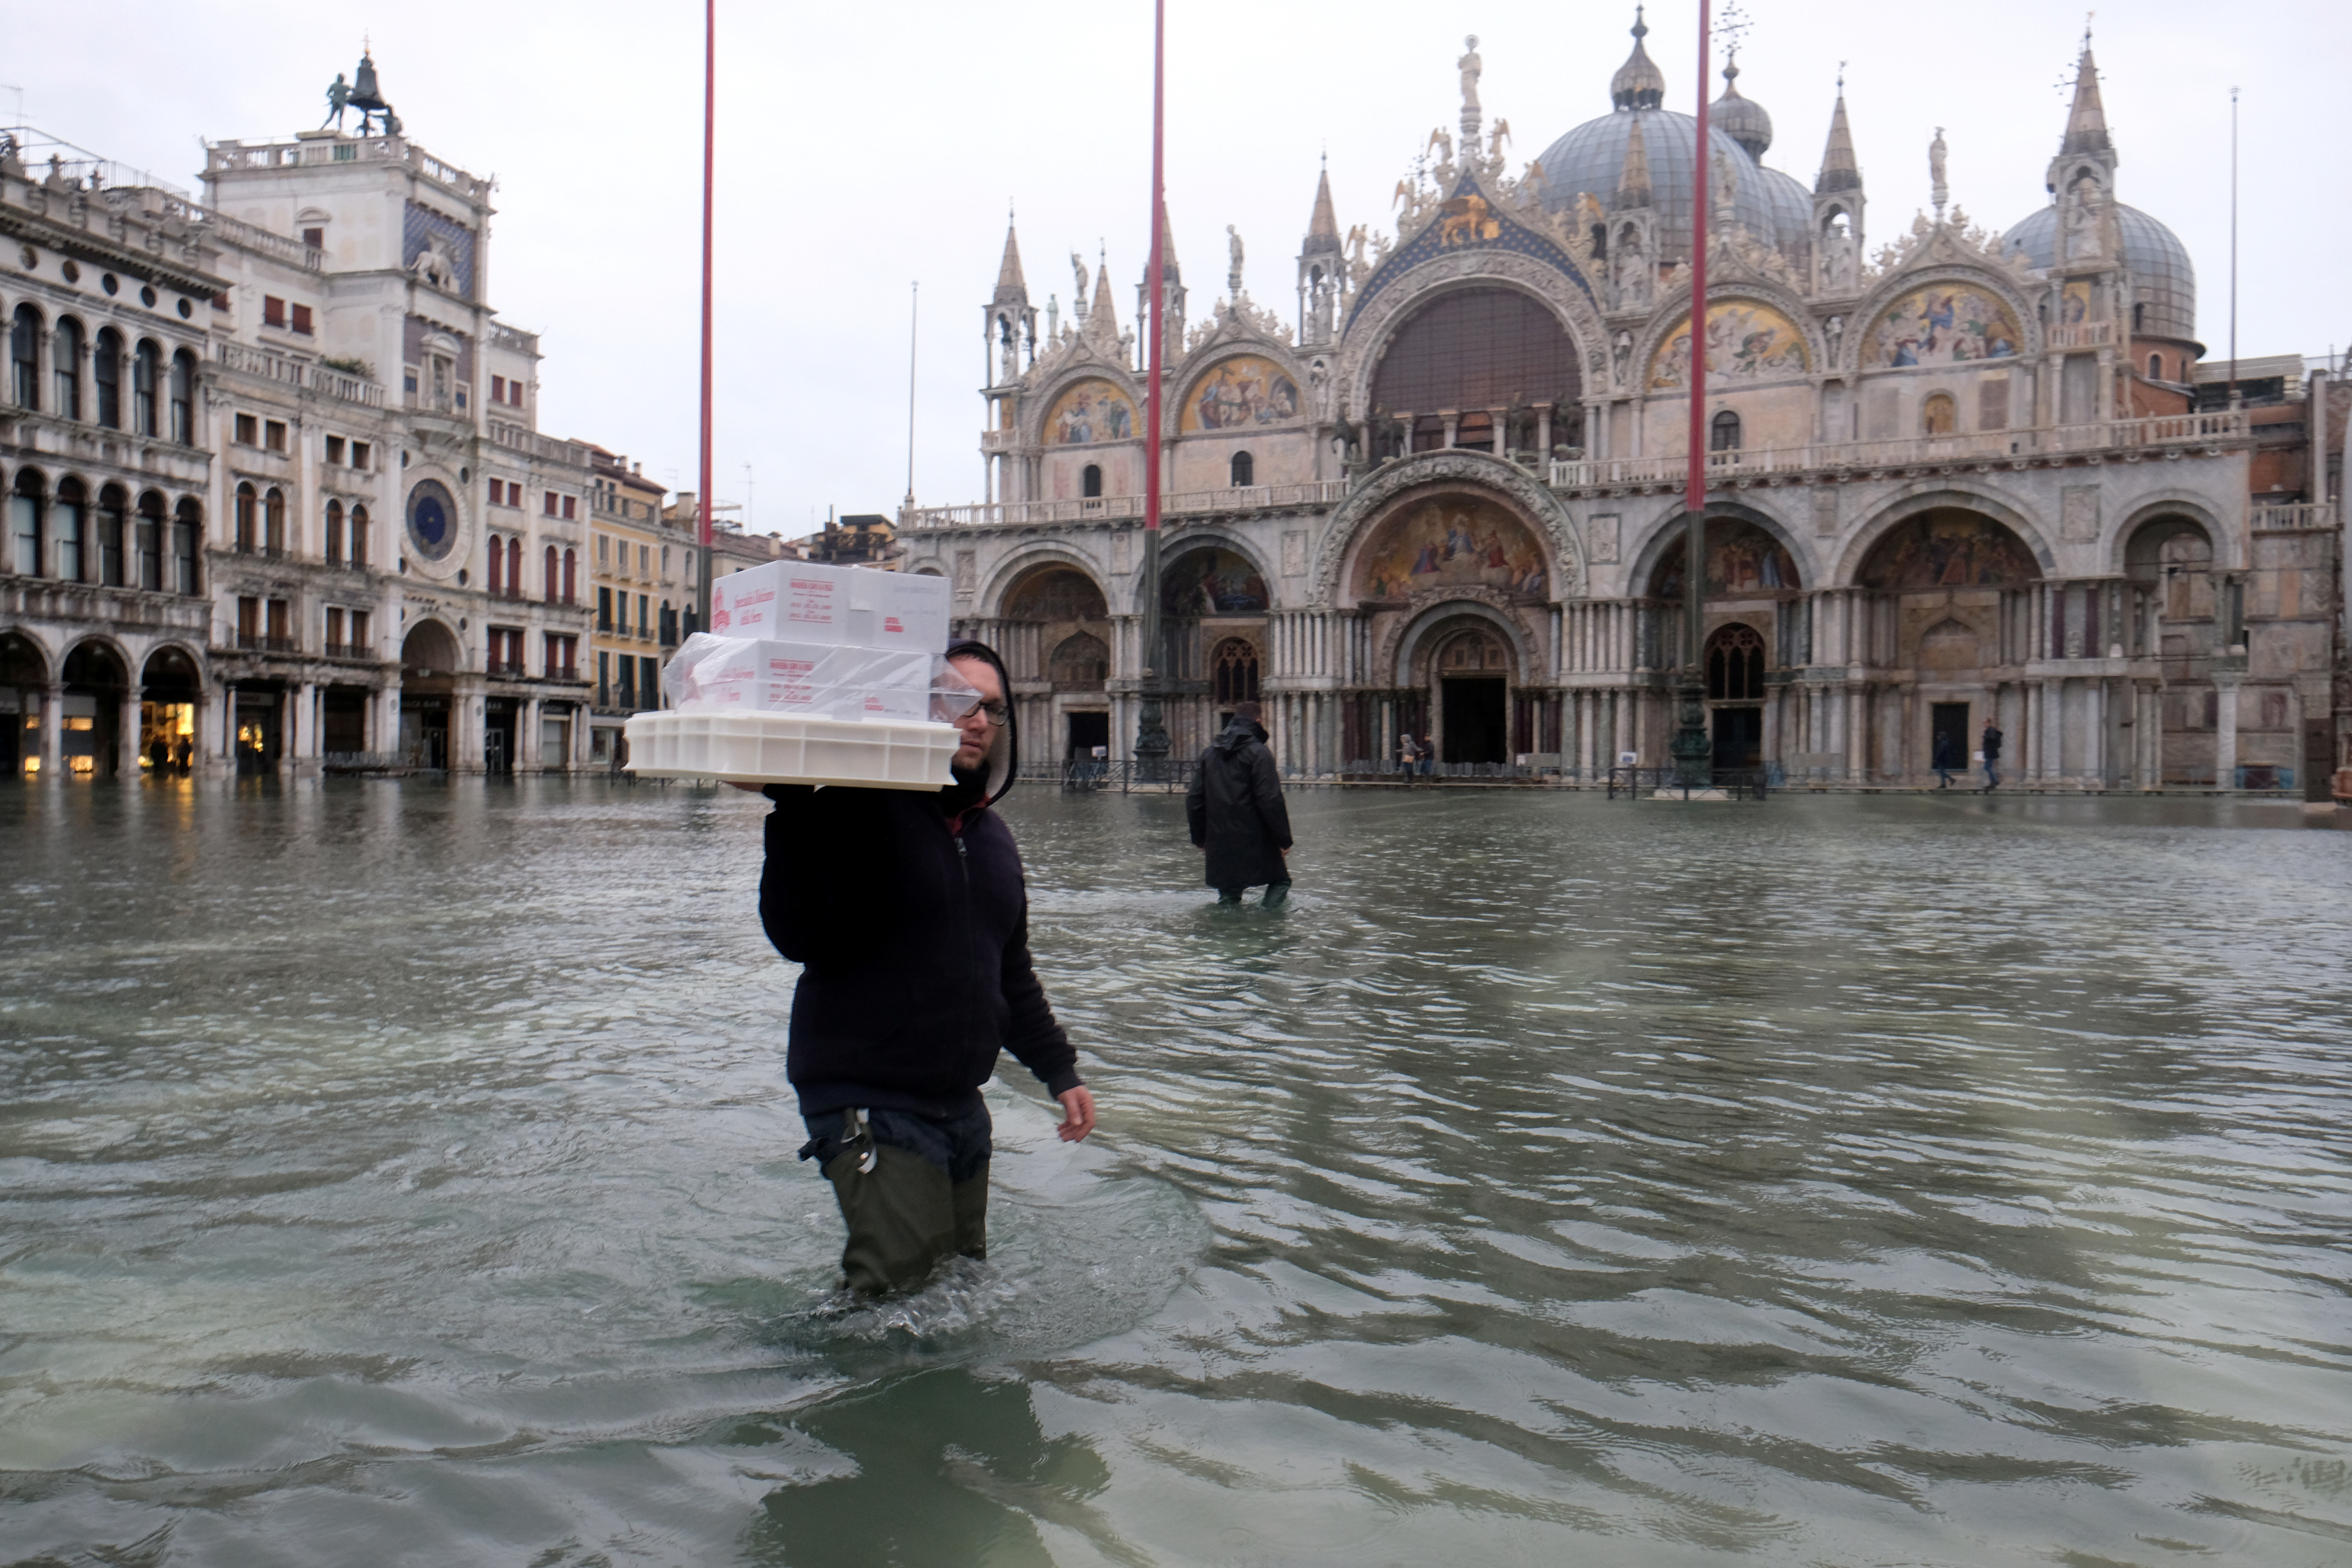 “Βούλιαξε” και πάλι η Βενετία! Συνεχίζονται οι σφοδρές βροχοπτώσεις στην Ιταλία [pics]